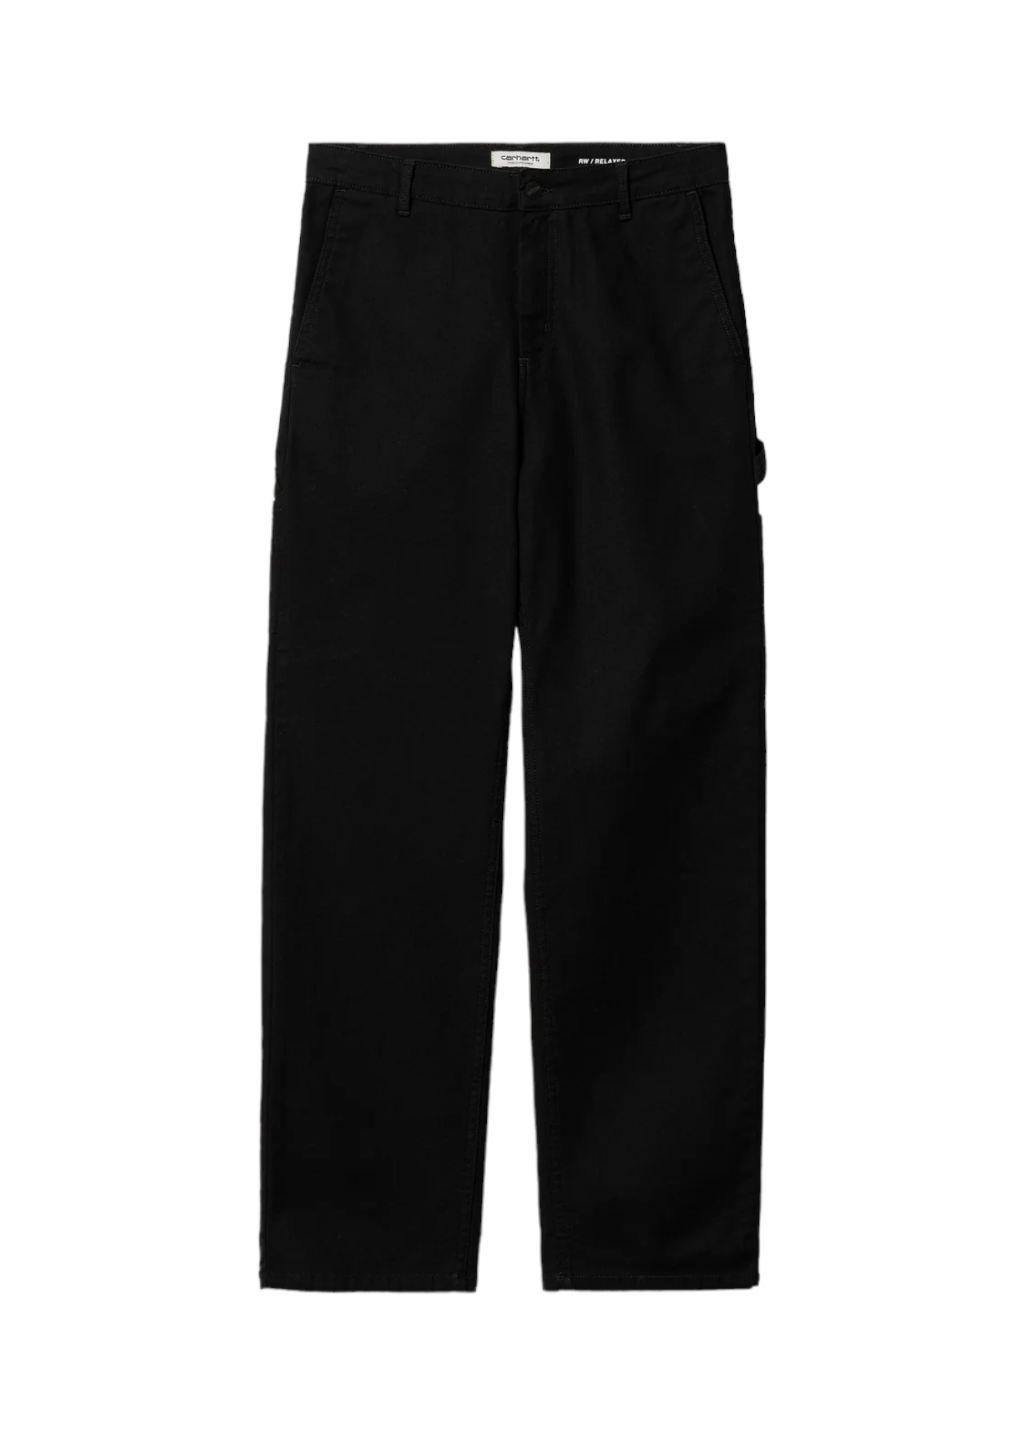 Carhartt WIP - W' Pierce Rinsed Black - Pants